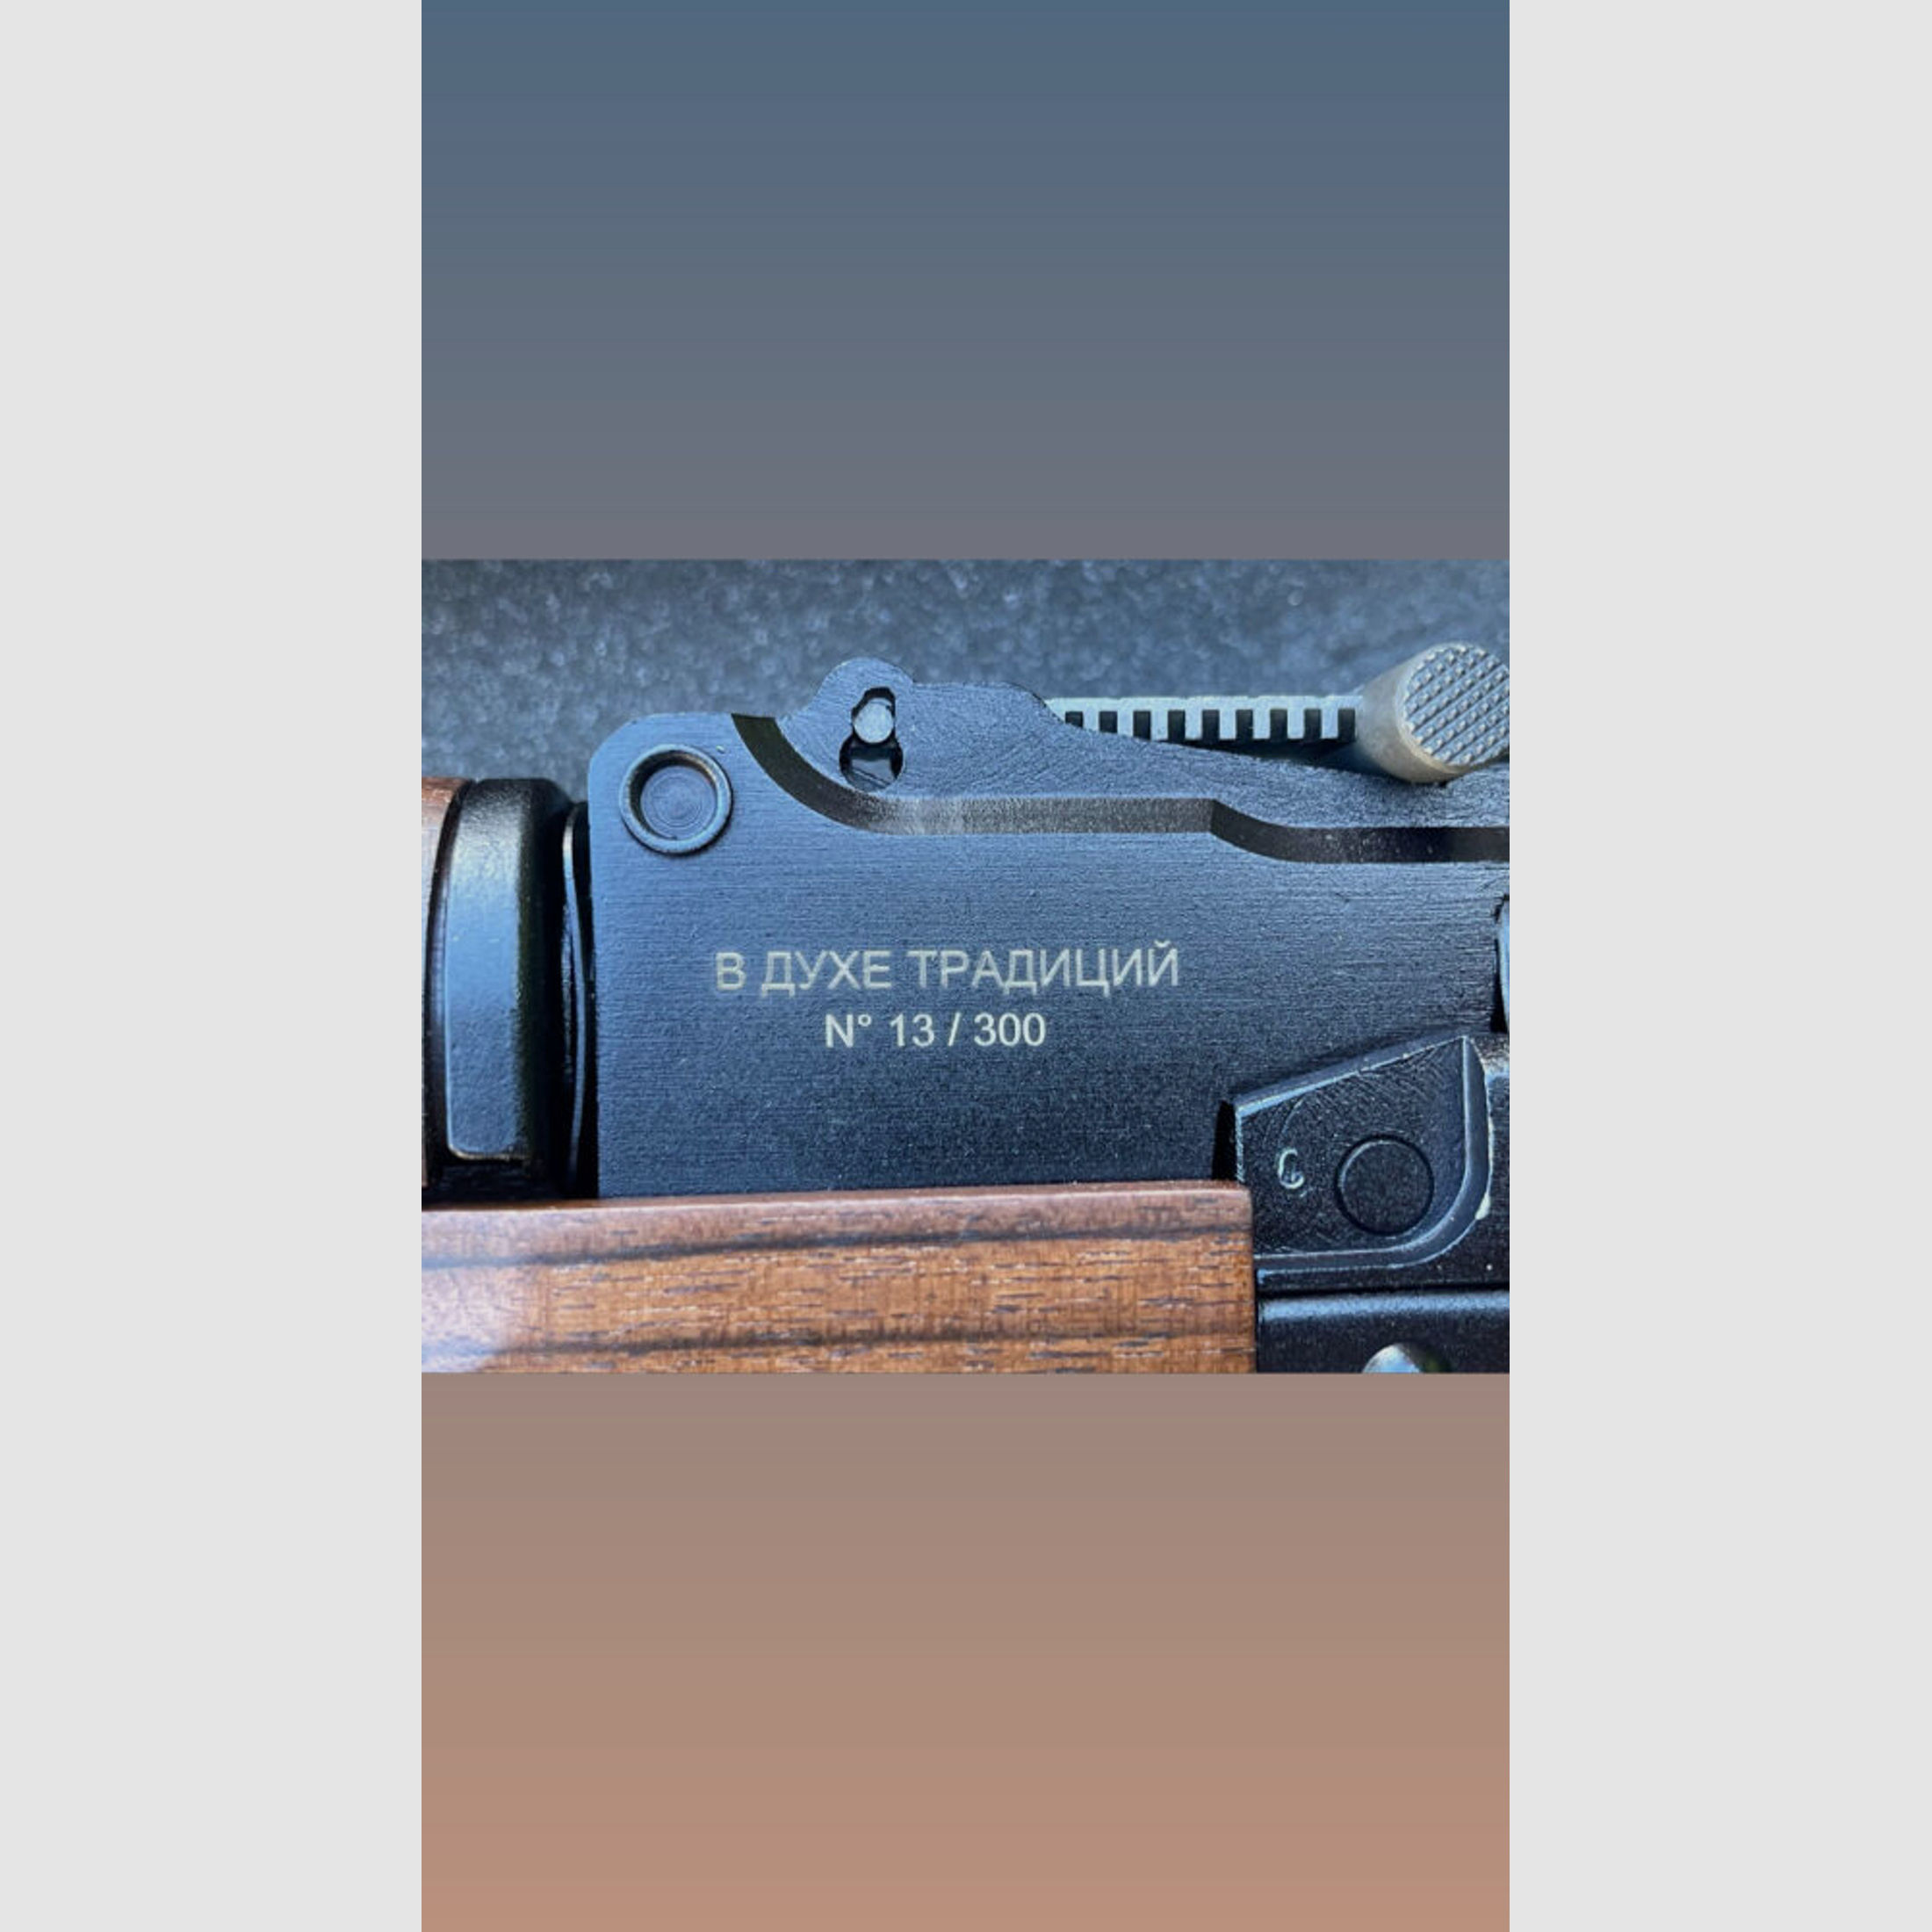 Izhmash Saiga MK 103 SOT - SPIRIT OF TRADITION inkl. Optik NPZ PU 3,5x22	 limitiert auf 300 Stück! inkl. 415mm Lauflänge - Holz Klappschaft und Handschutz - zivile Version - System AK47 AK74 AK100 - halbautom. Büchse 7,62x39 MK103